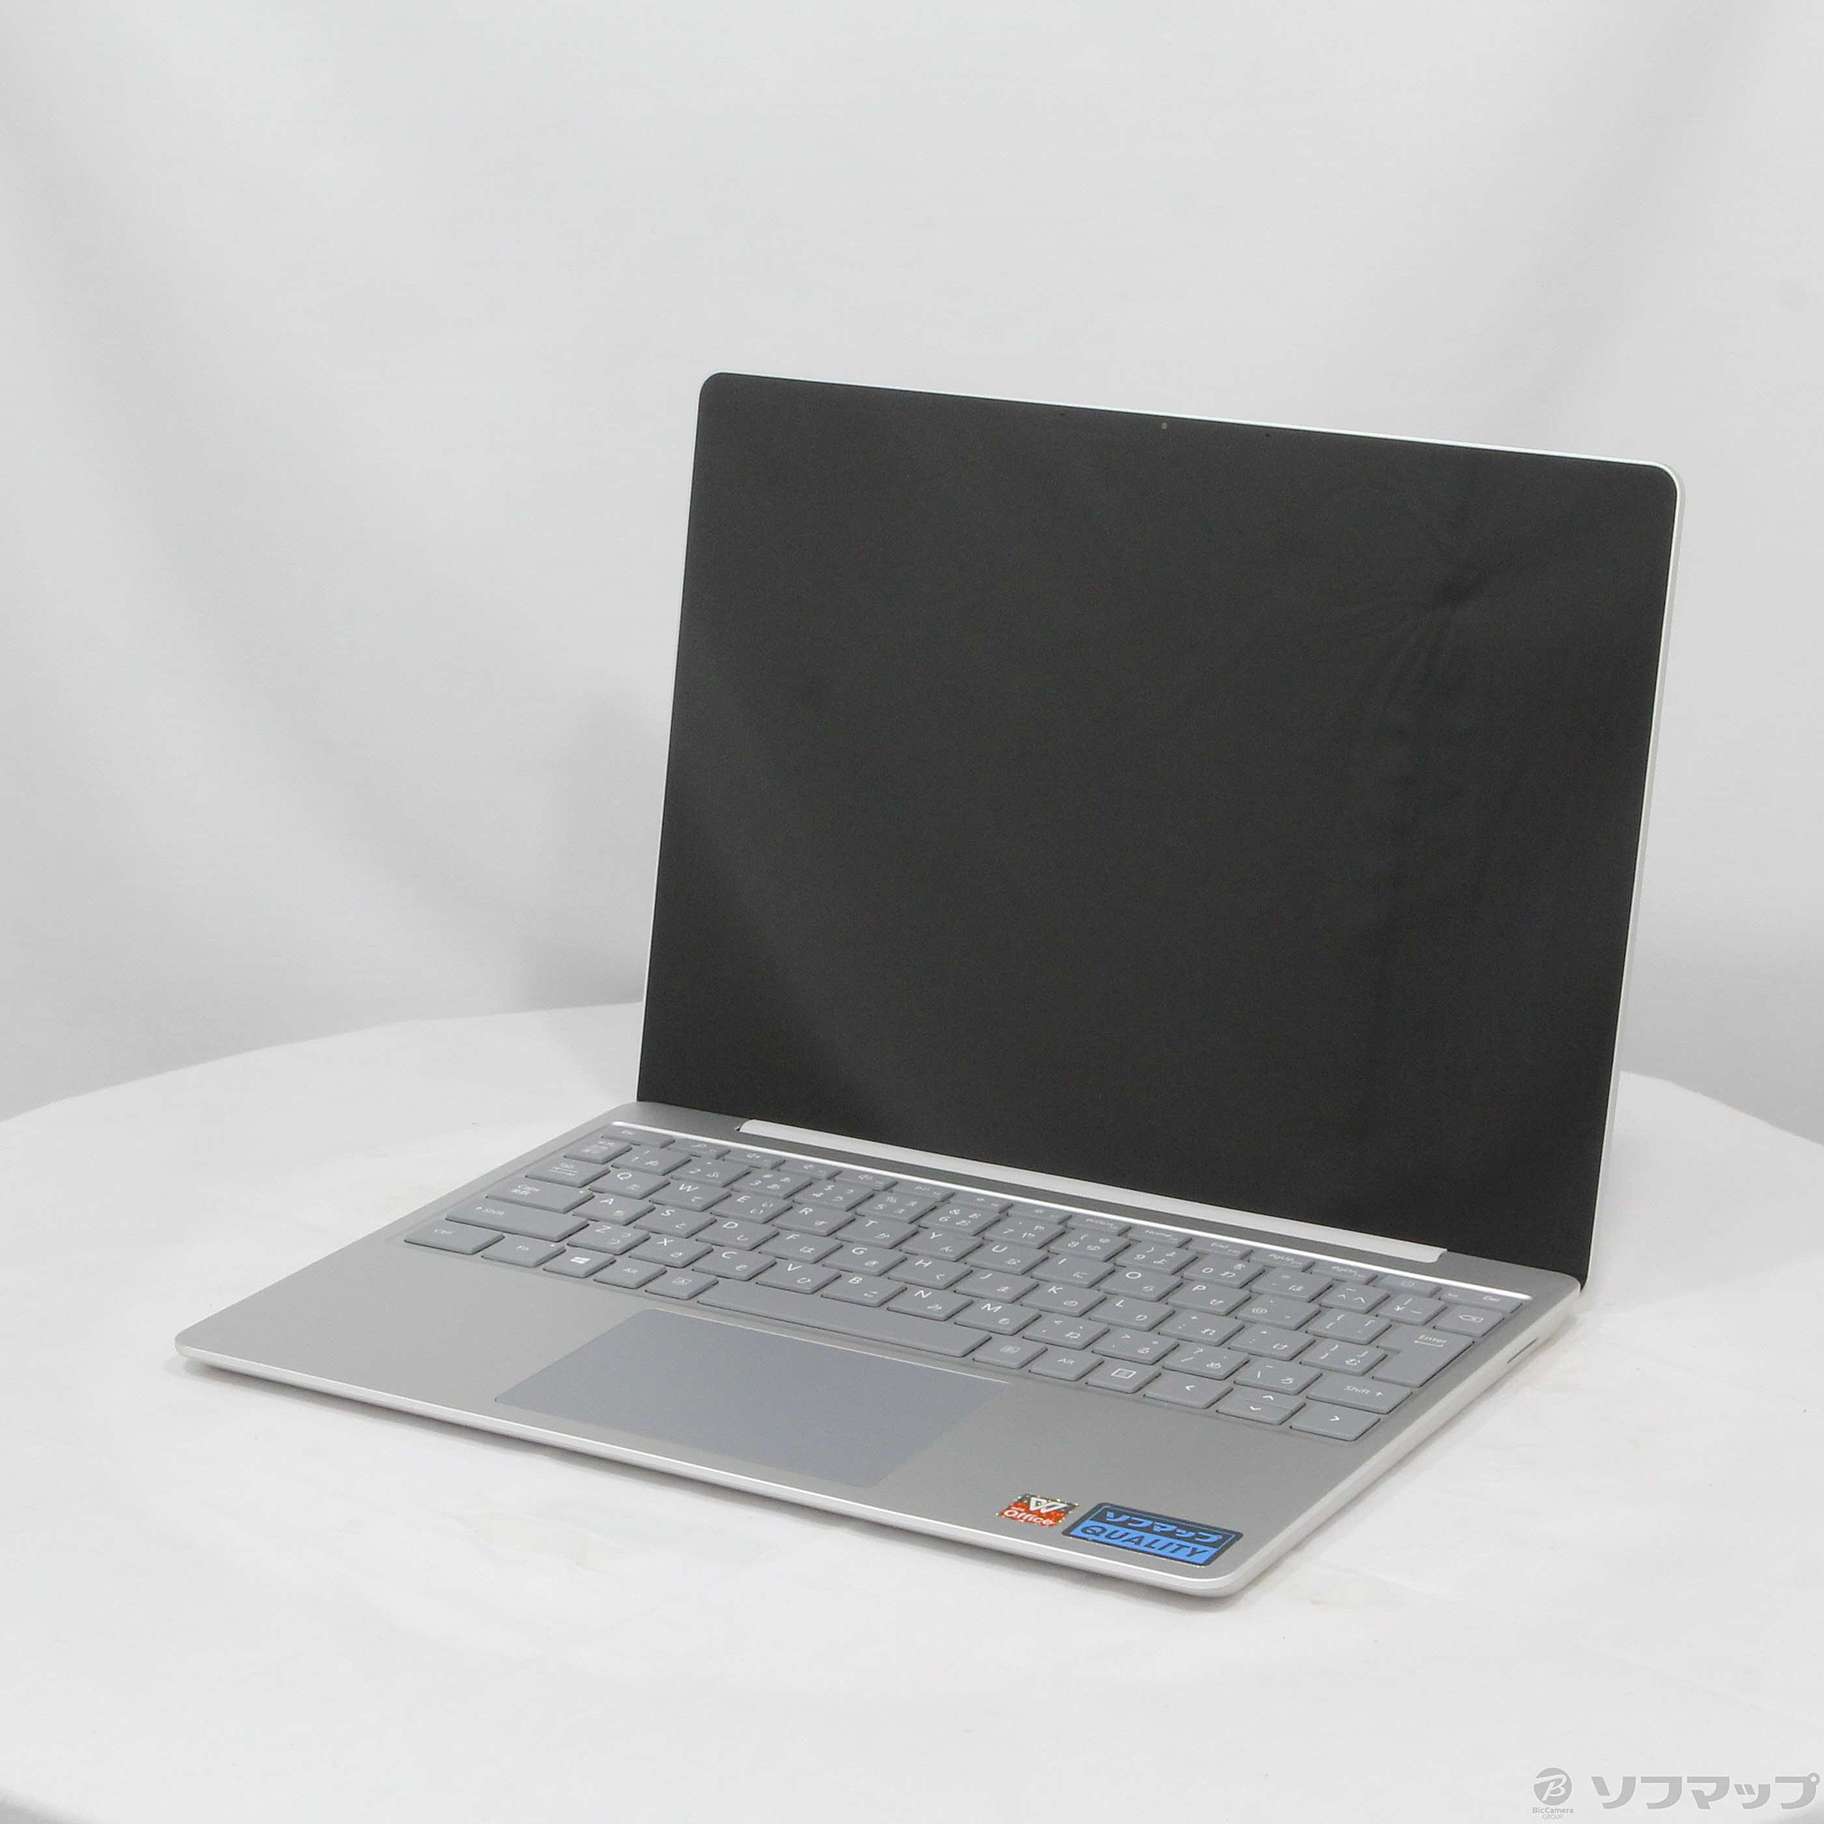 【新品未開封】THH-00020 Surface Laptop Goプラチナ